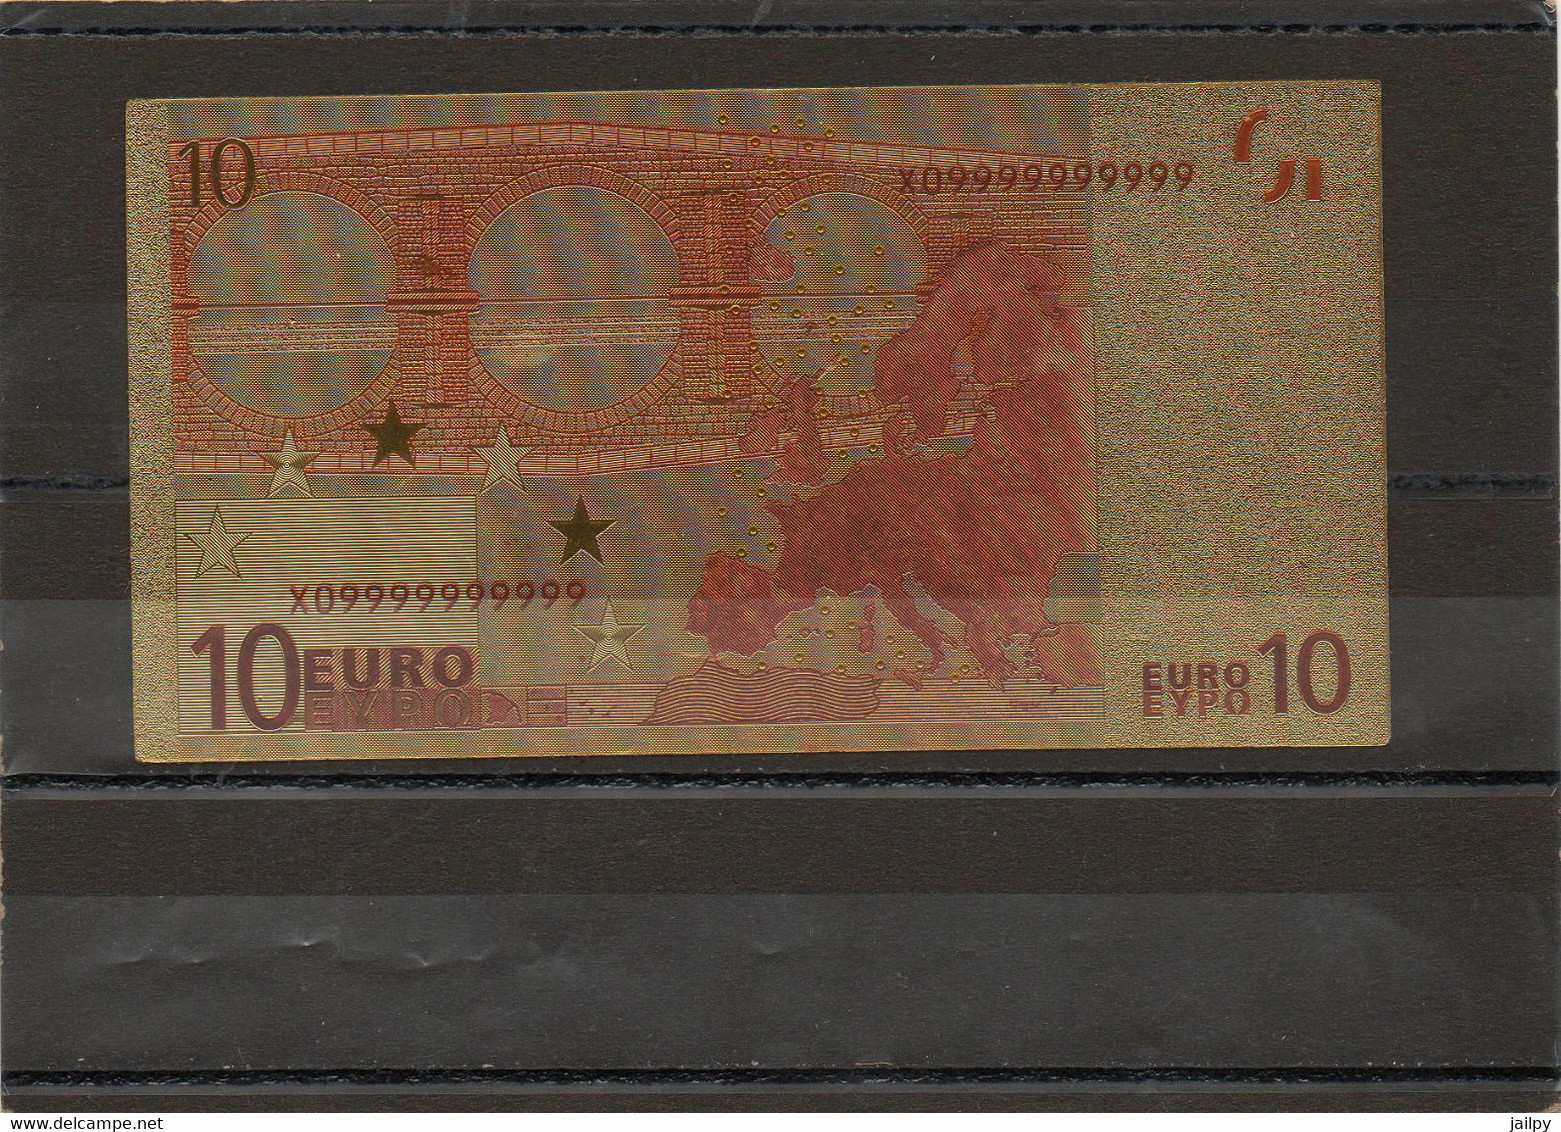 FRANCE    Billet De 10 Euros   En Polymère Plaqué Or  Série 2002 - Fictifs & Spécimens